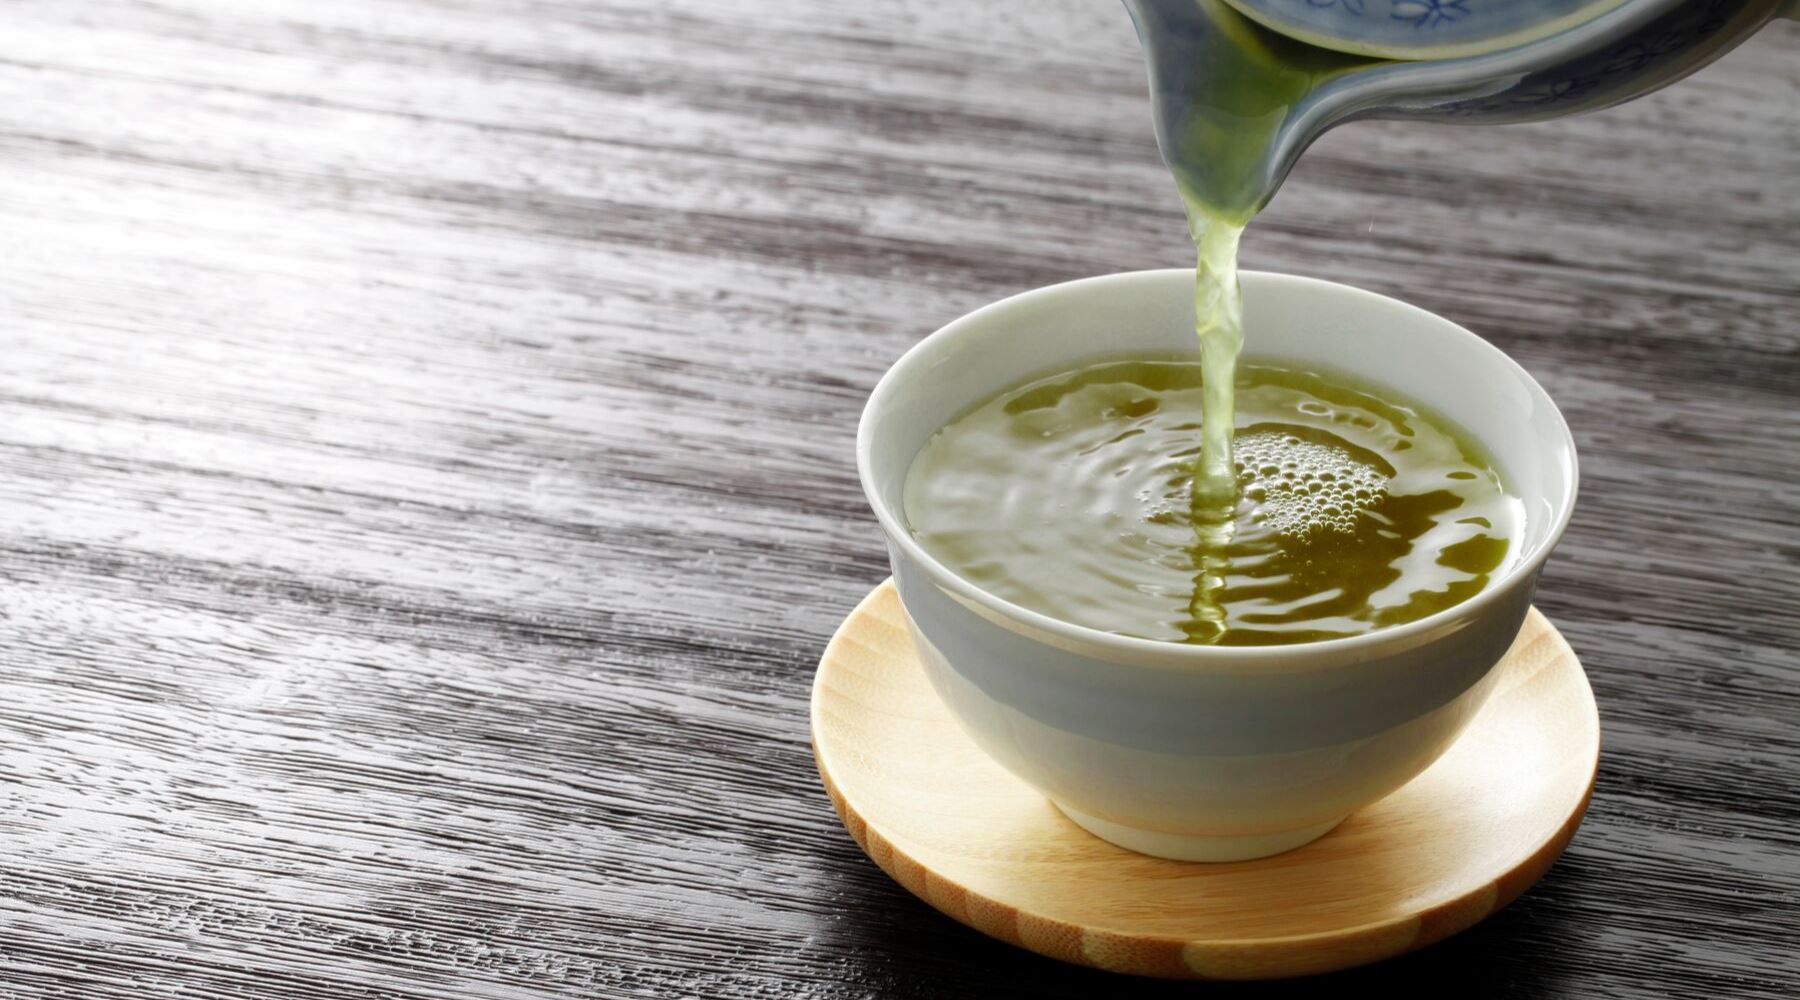 How To Make Green Tea Taste Better